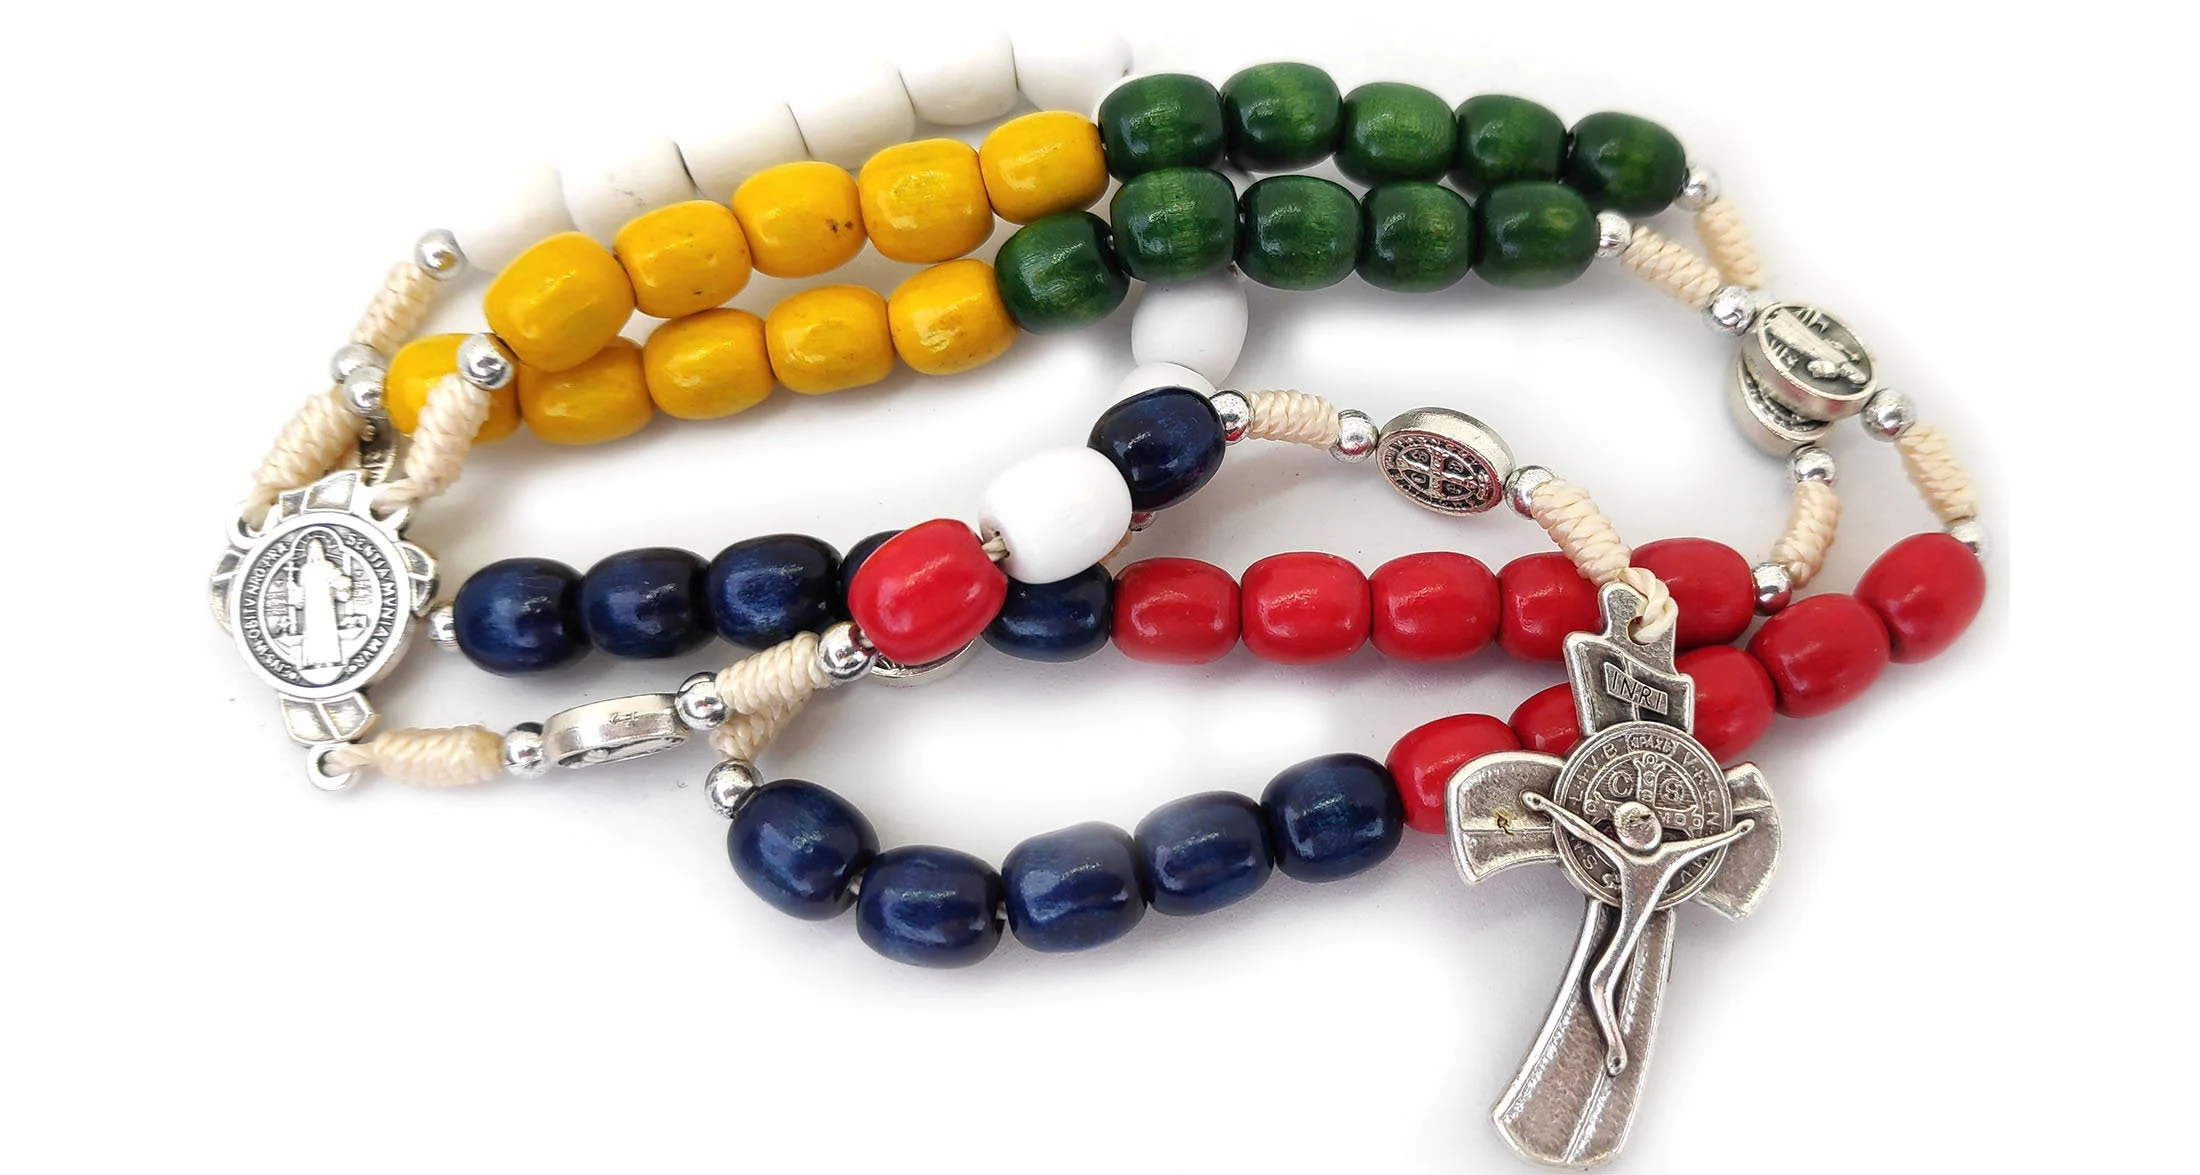 significado de los colores del rosario misionero